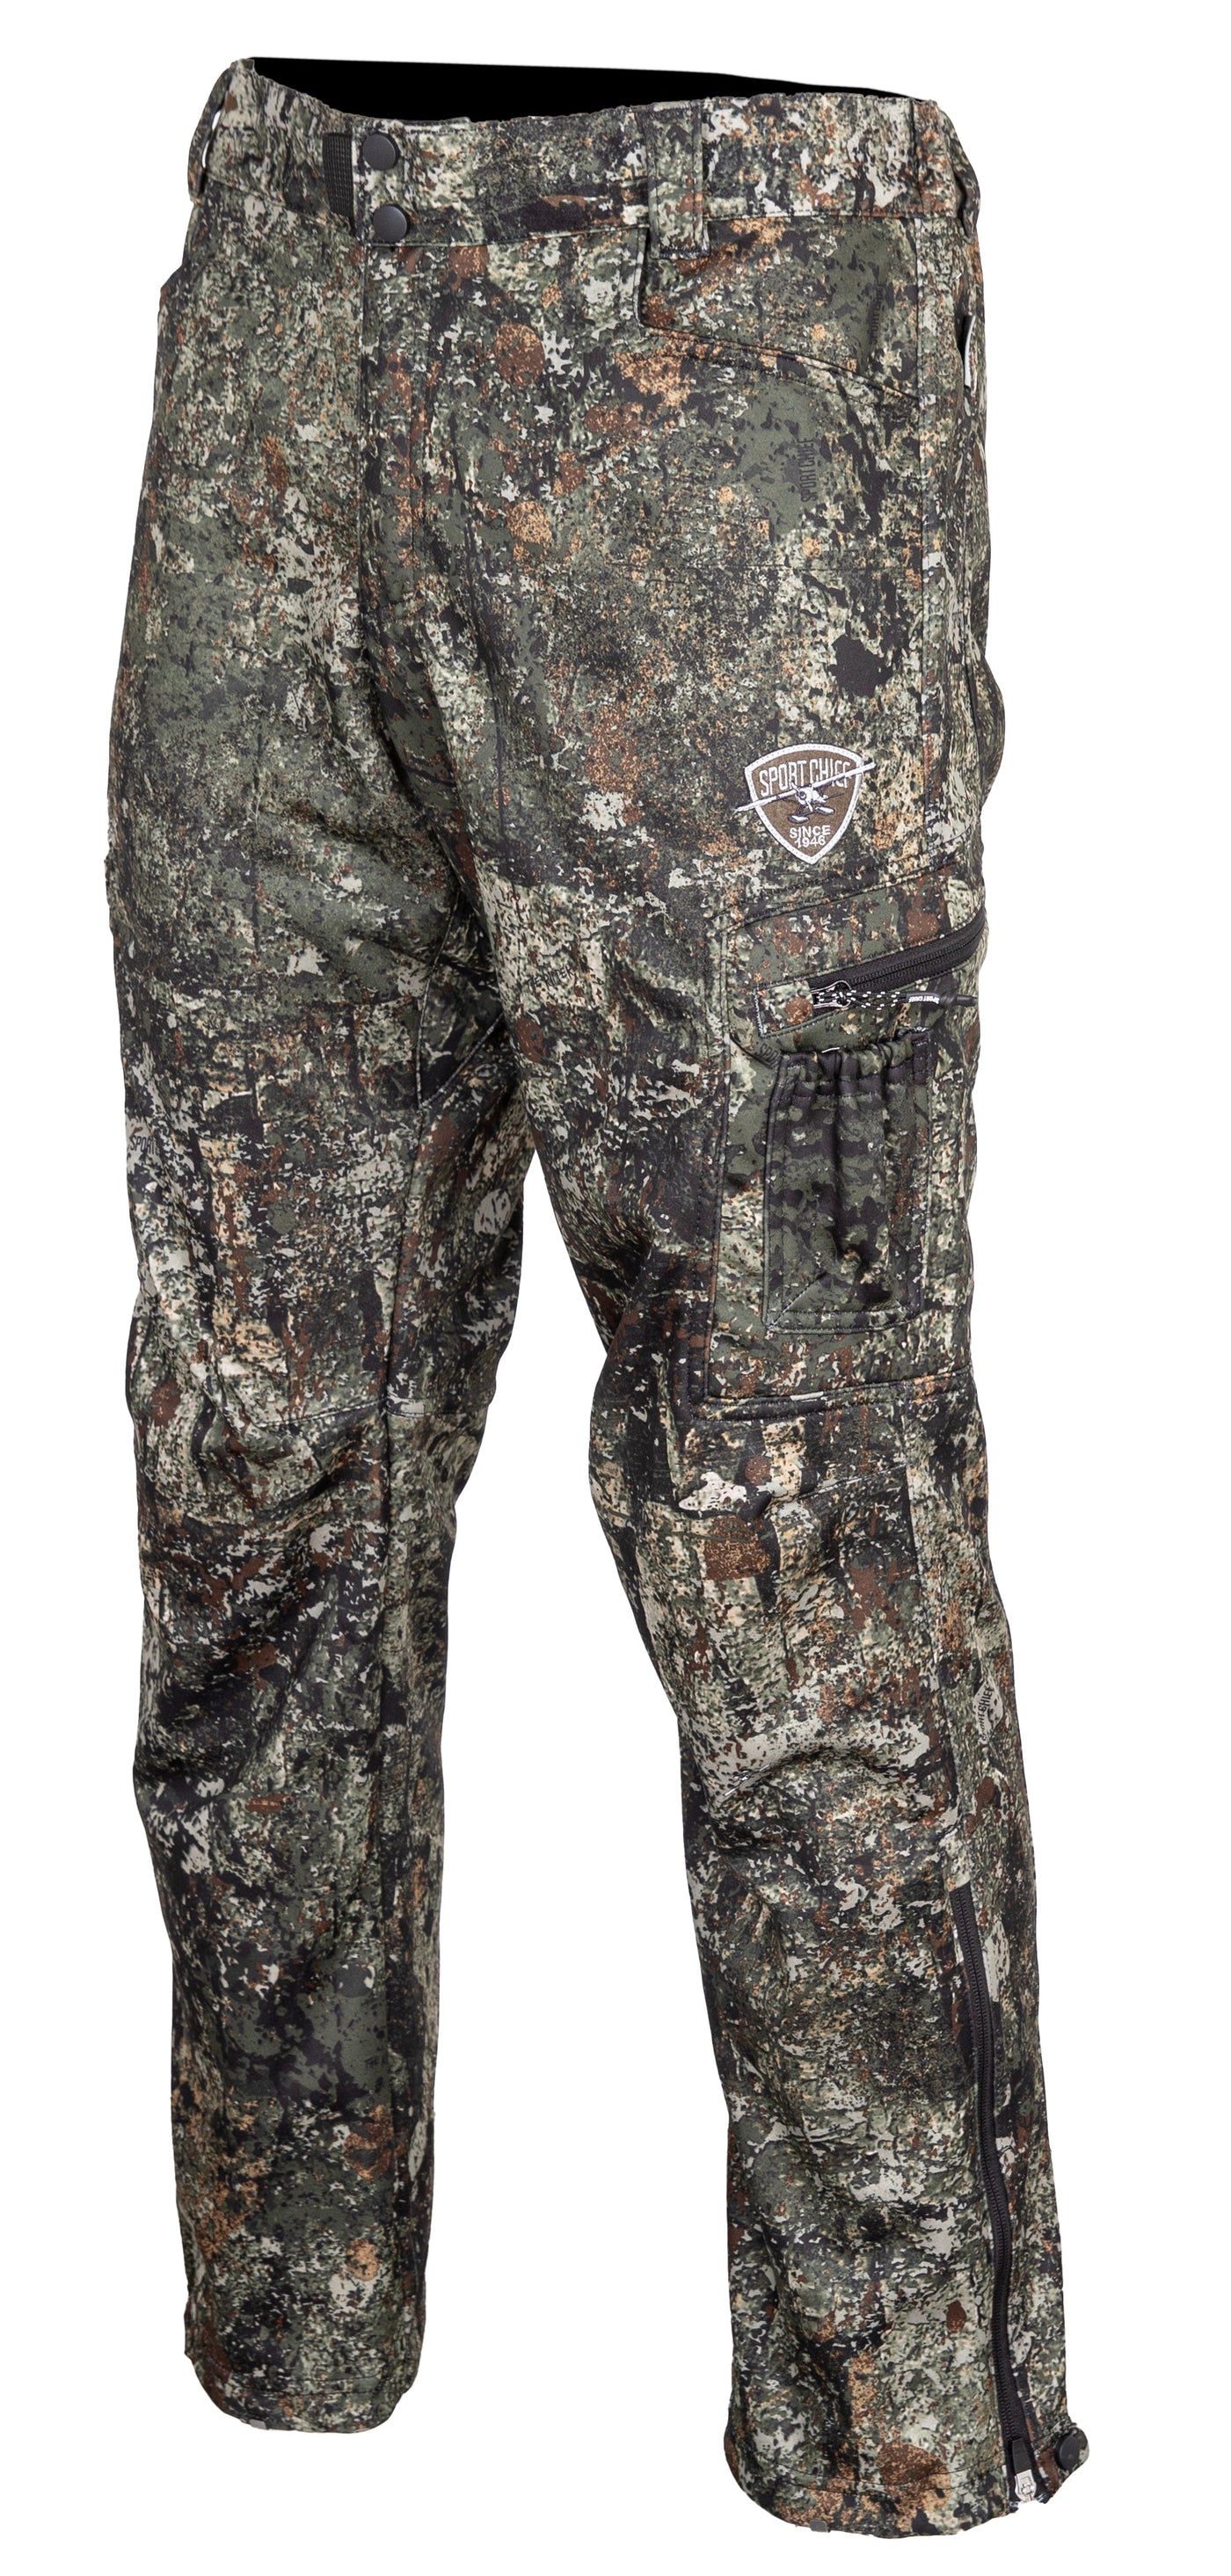 Pantalon camo de chasse homme Collection "Bête de chasse" Jason T. Morneau - Sportchief